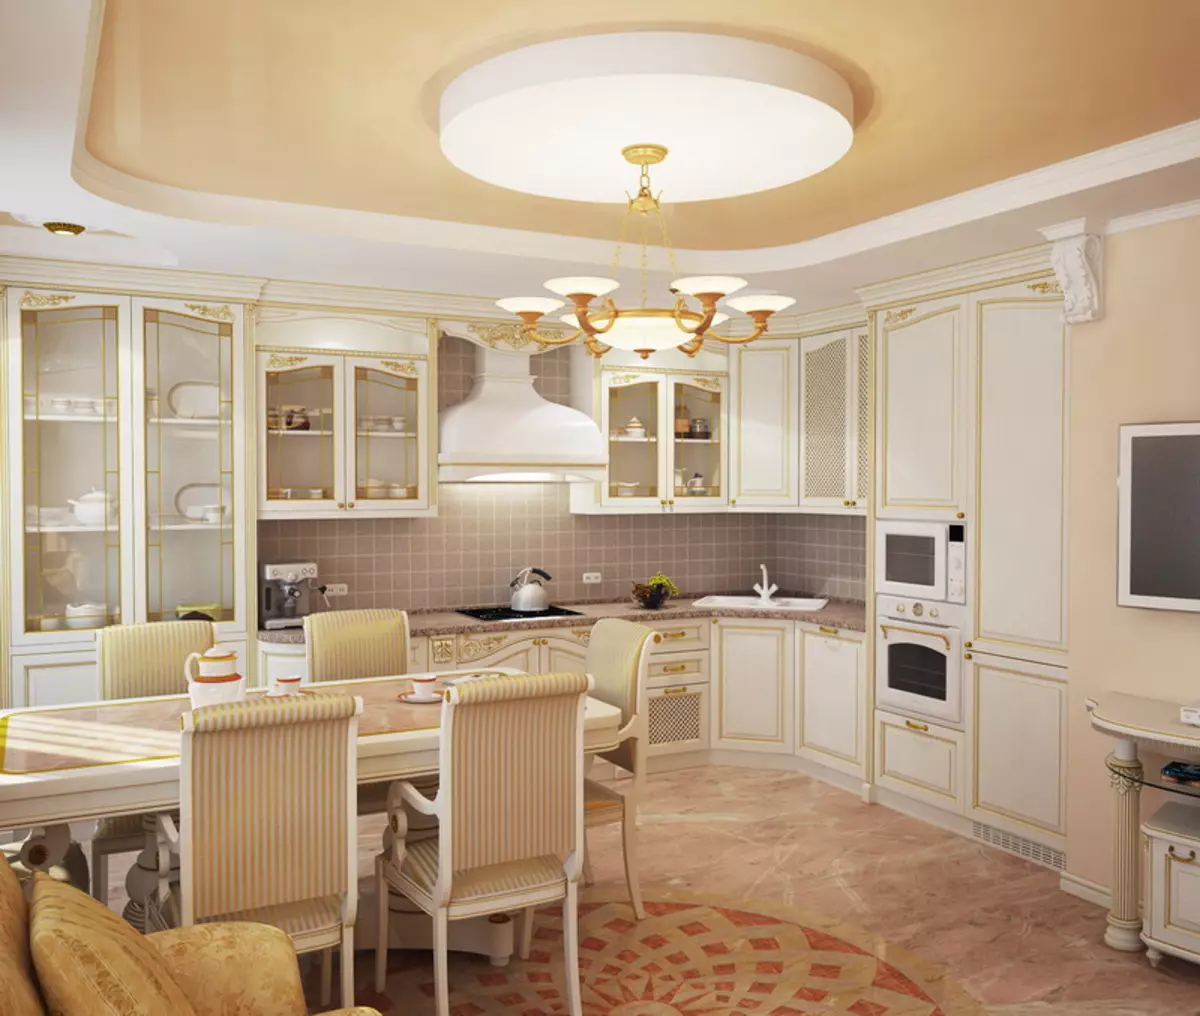 Cucina in stile classico bianco (63 immagini): cucina classica in moderno interno classico, design bianco cucina 9543_38